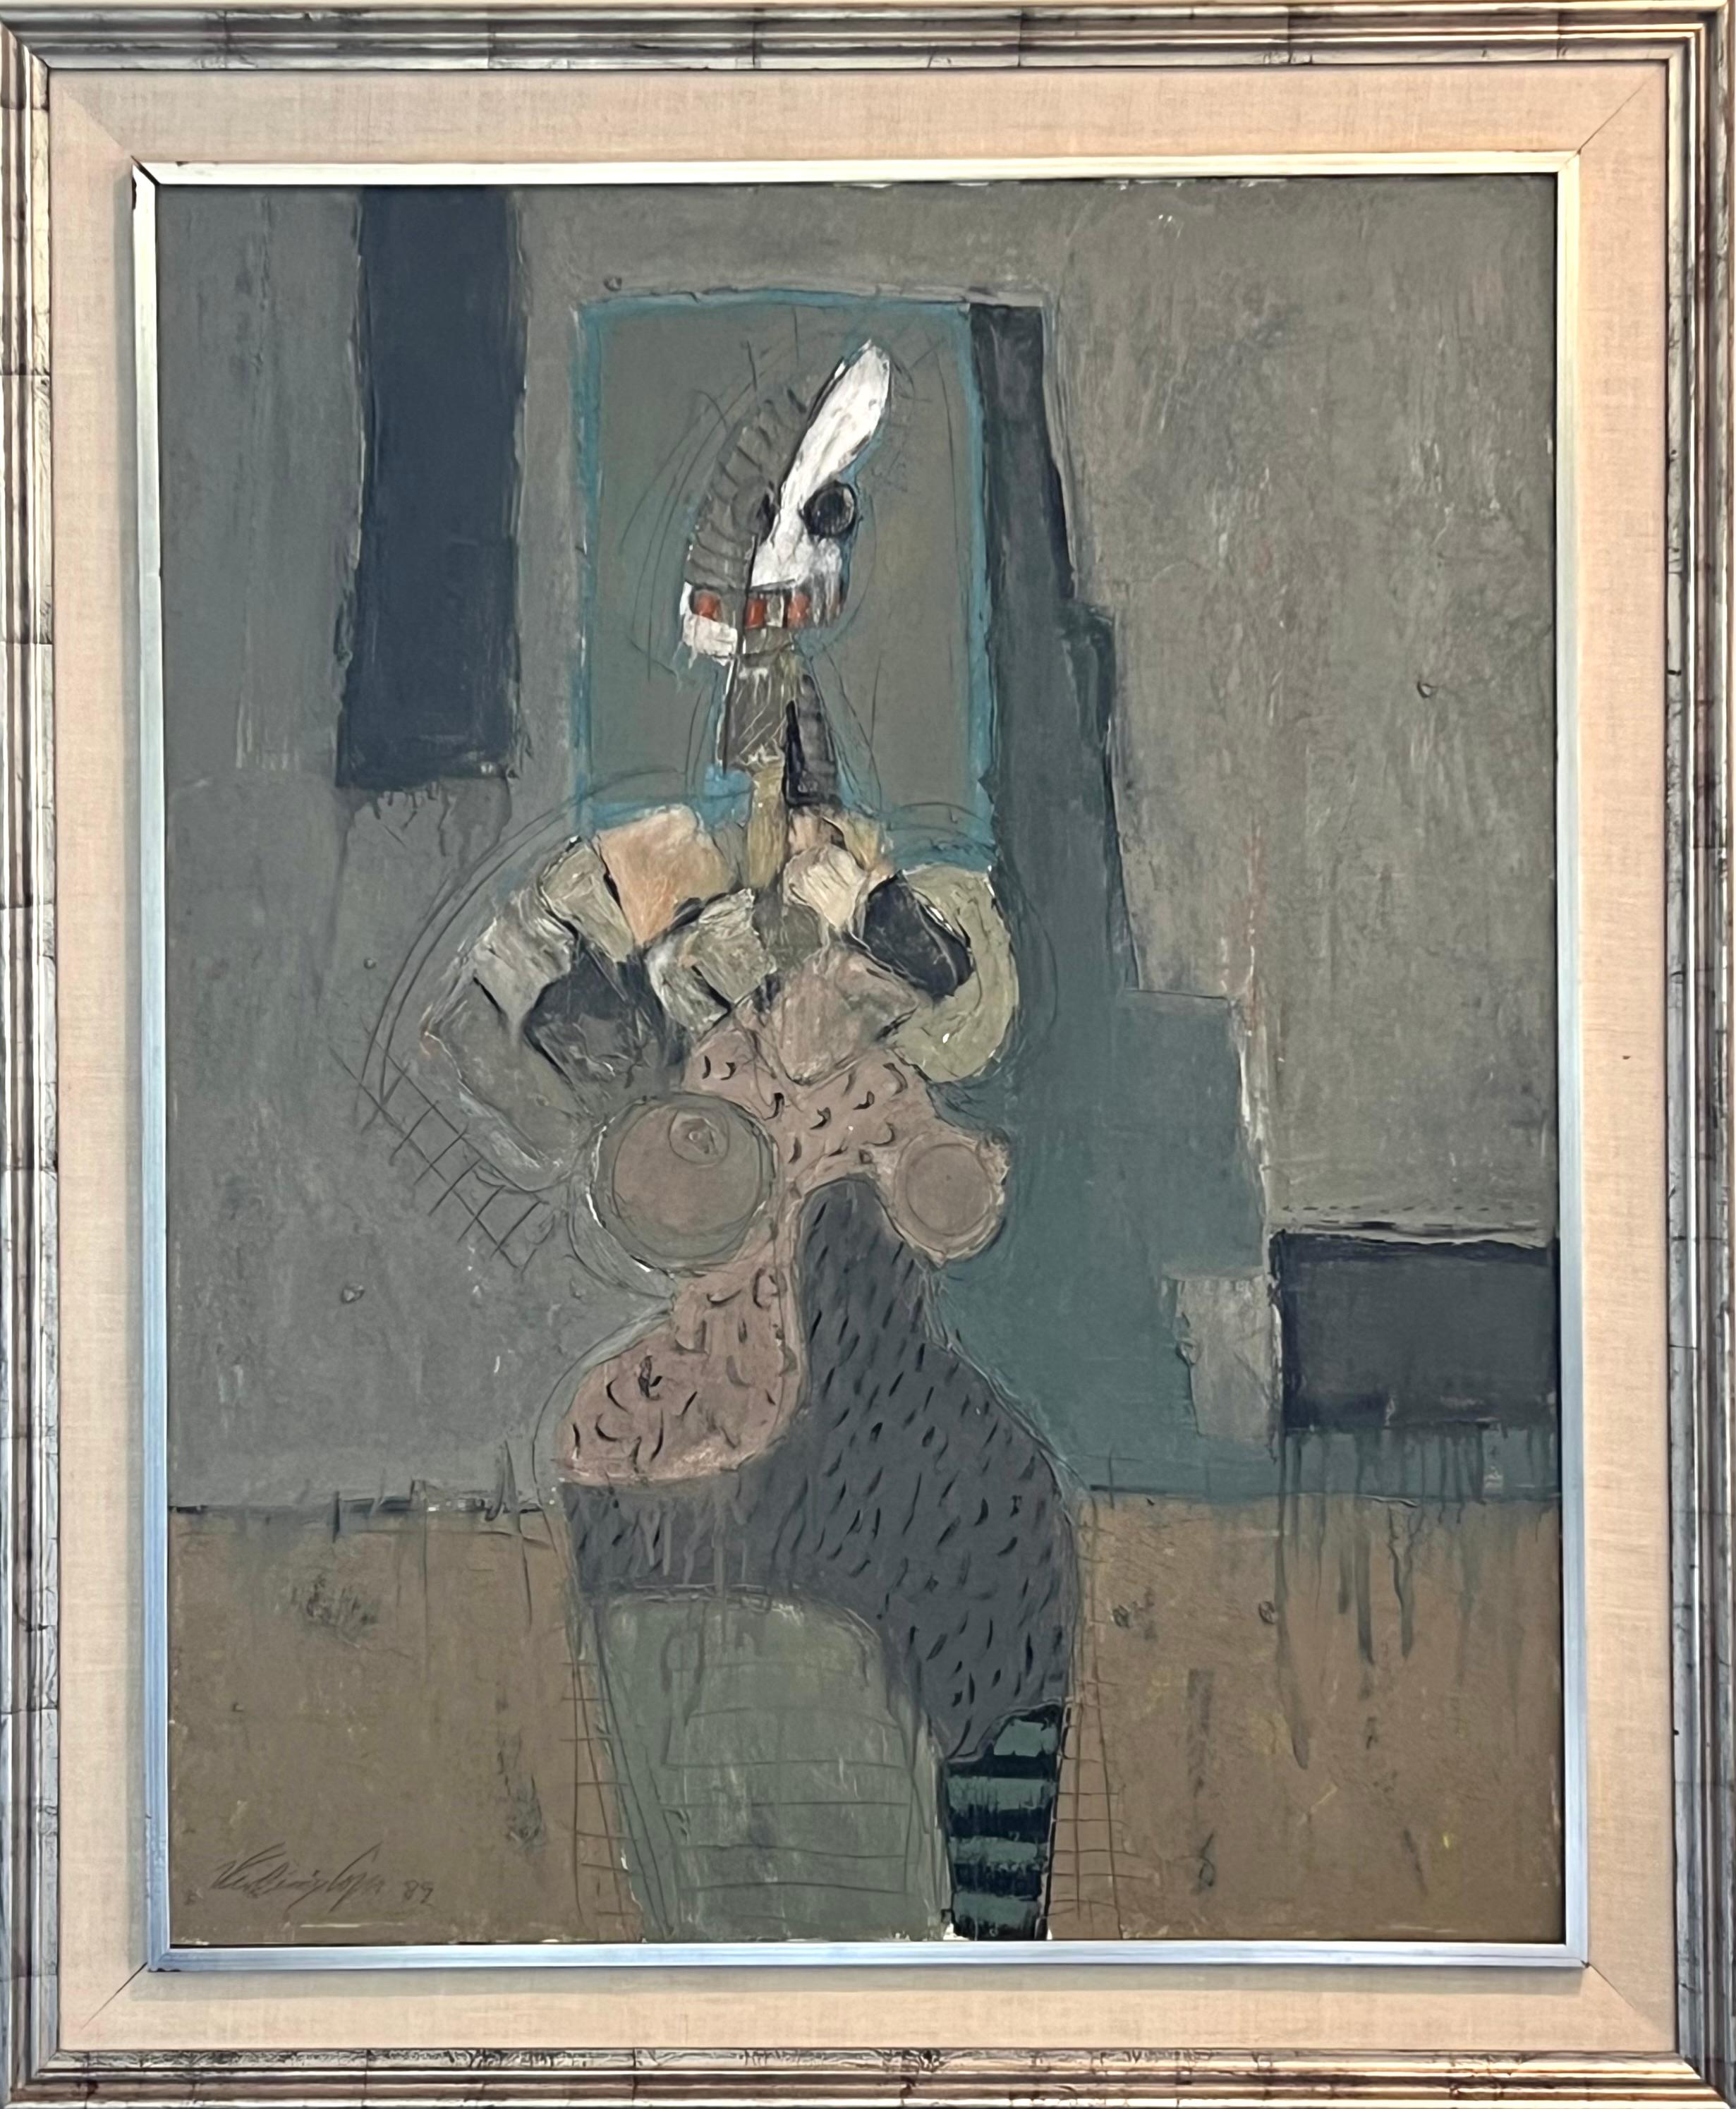 Sitzende Frau, Öl/Leinwand 1989, Kubistische abstrakte weibliche Figur, COLORFUL – Painting von Vladimir Cora